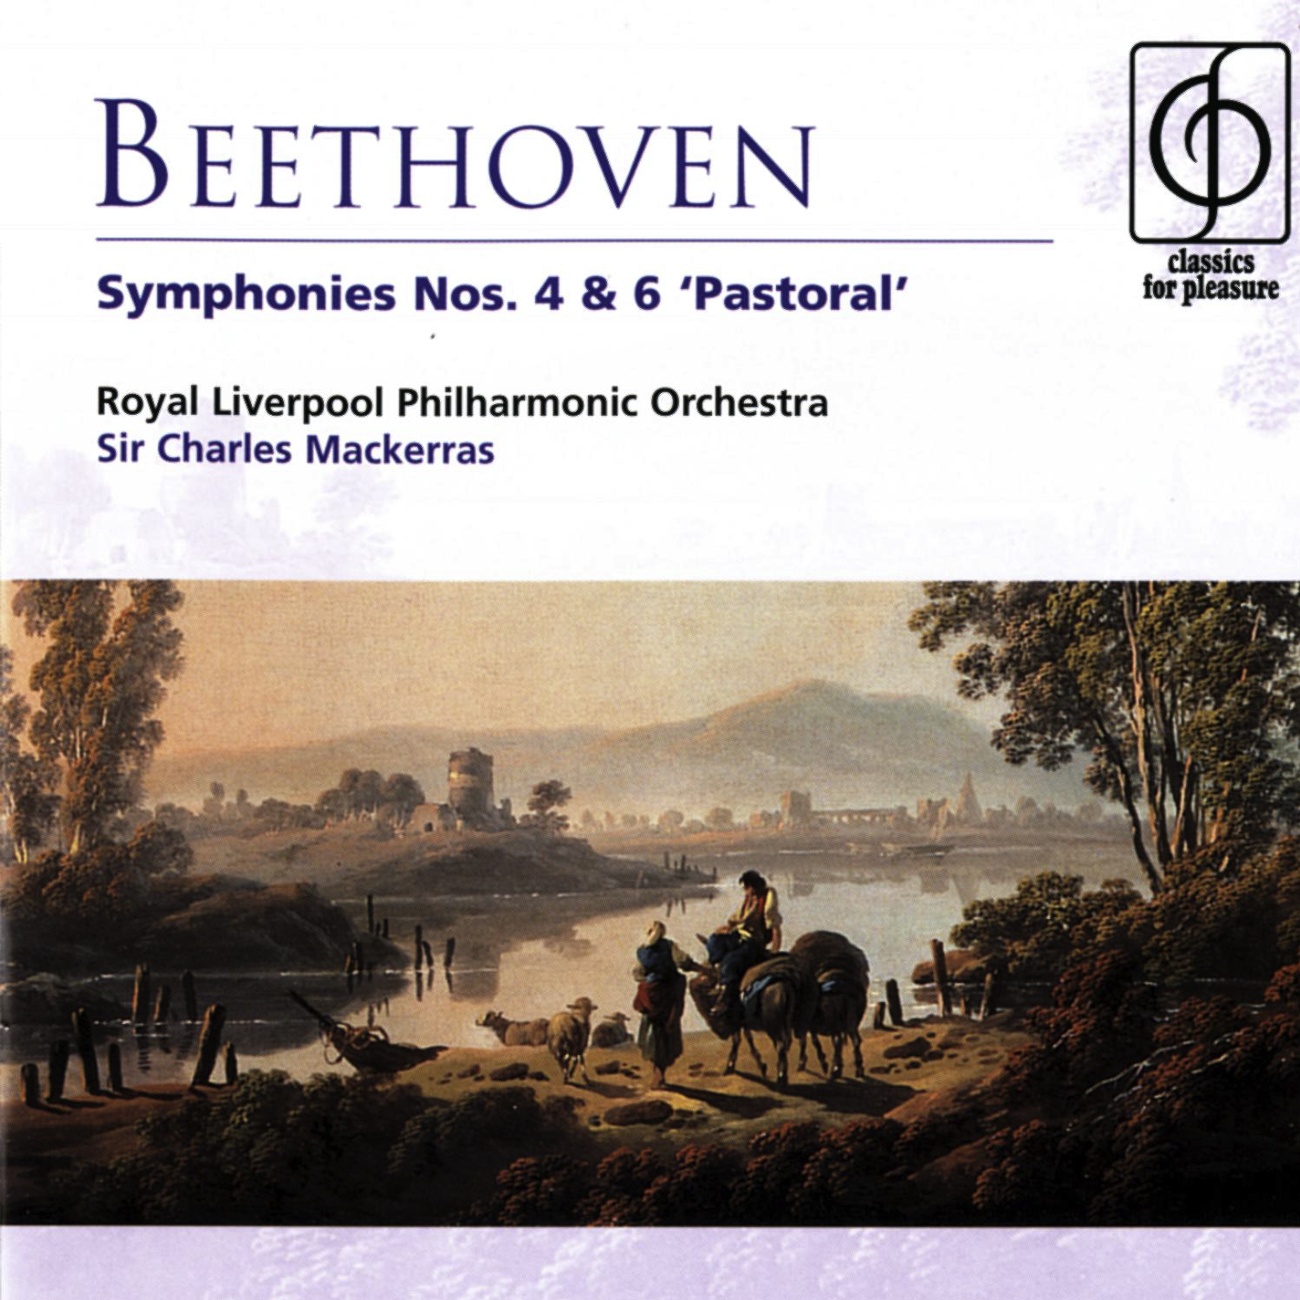 Symphony No. 4 in B flat Op. 60: III.     Menuetto (Allegro vivace) - Trio (Un poco meno allegro)